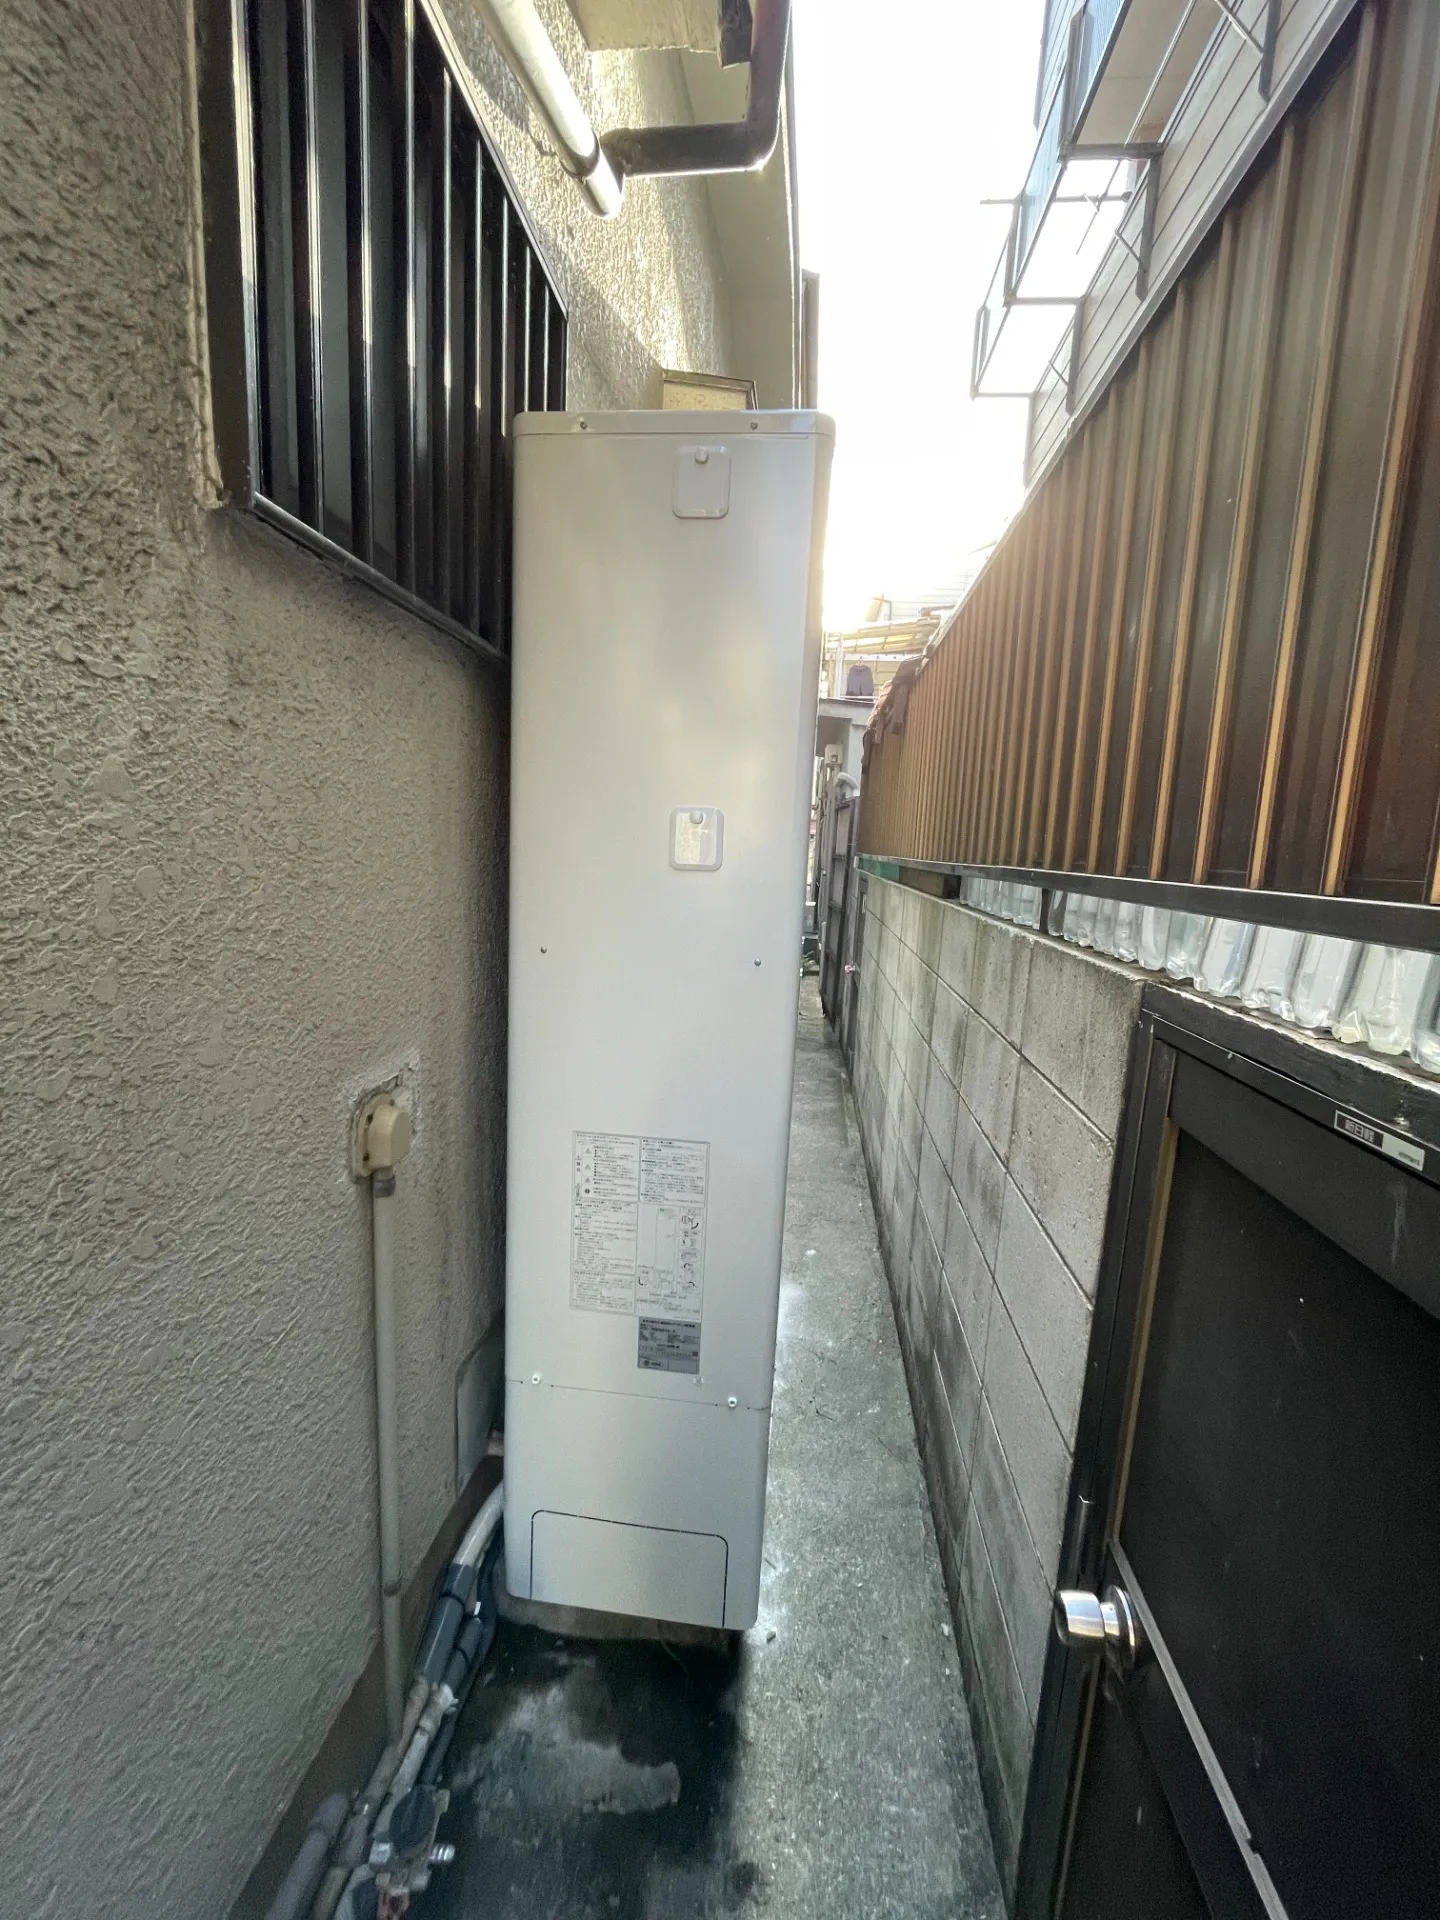 大阪府の戸建て住宅で電気温水器からエコキュートへ交換させていただきました。